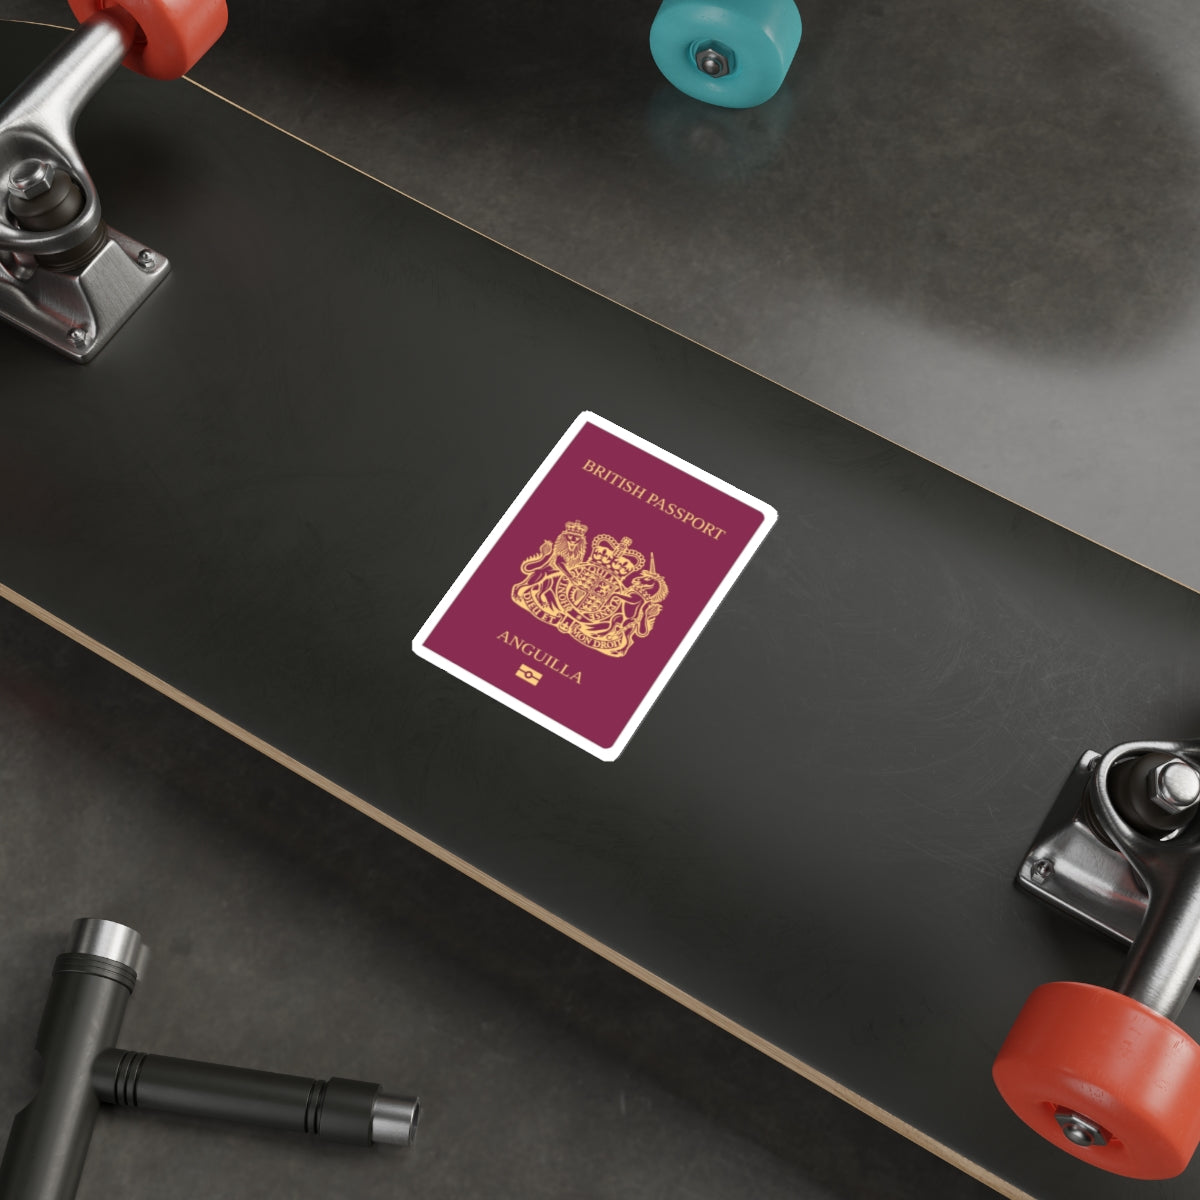 Anguilla Passport STICKER Vinyl Die-Cut Decal-The Sticker Space